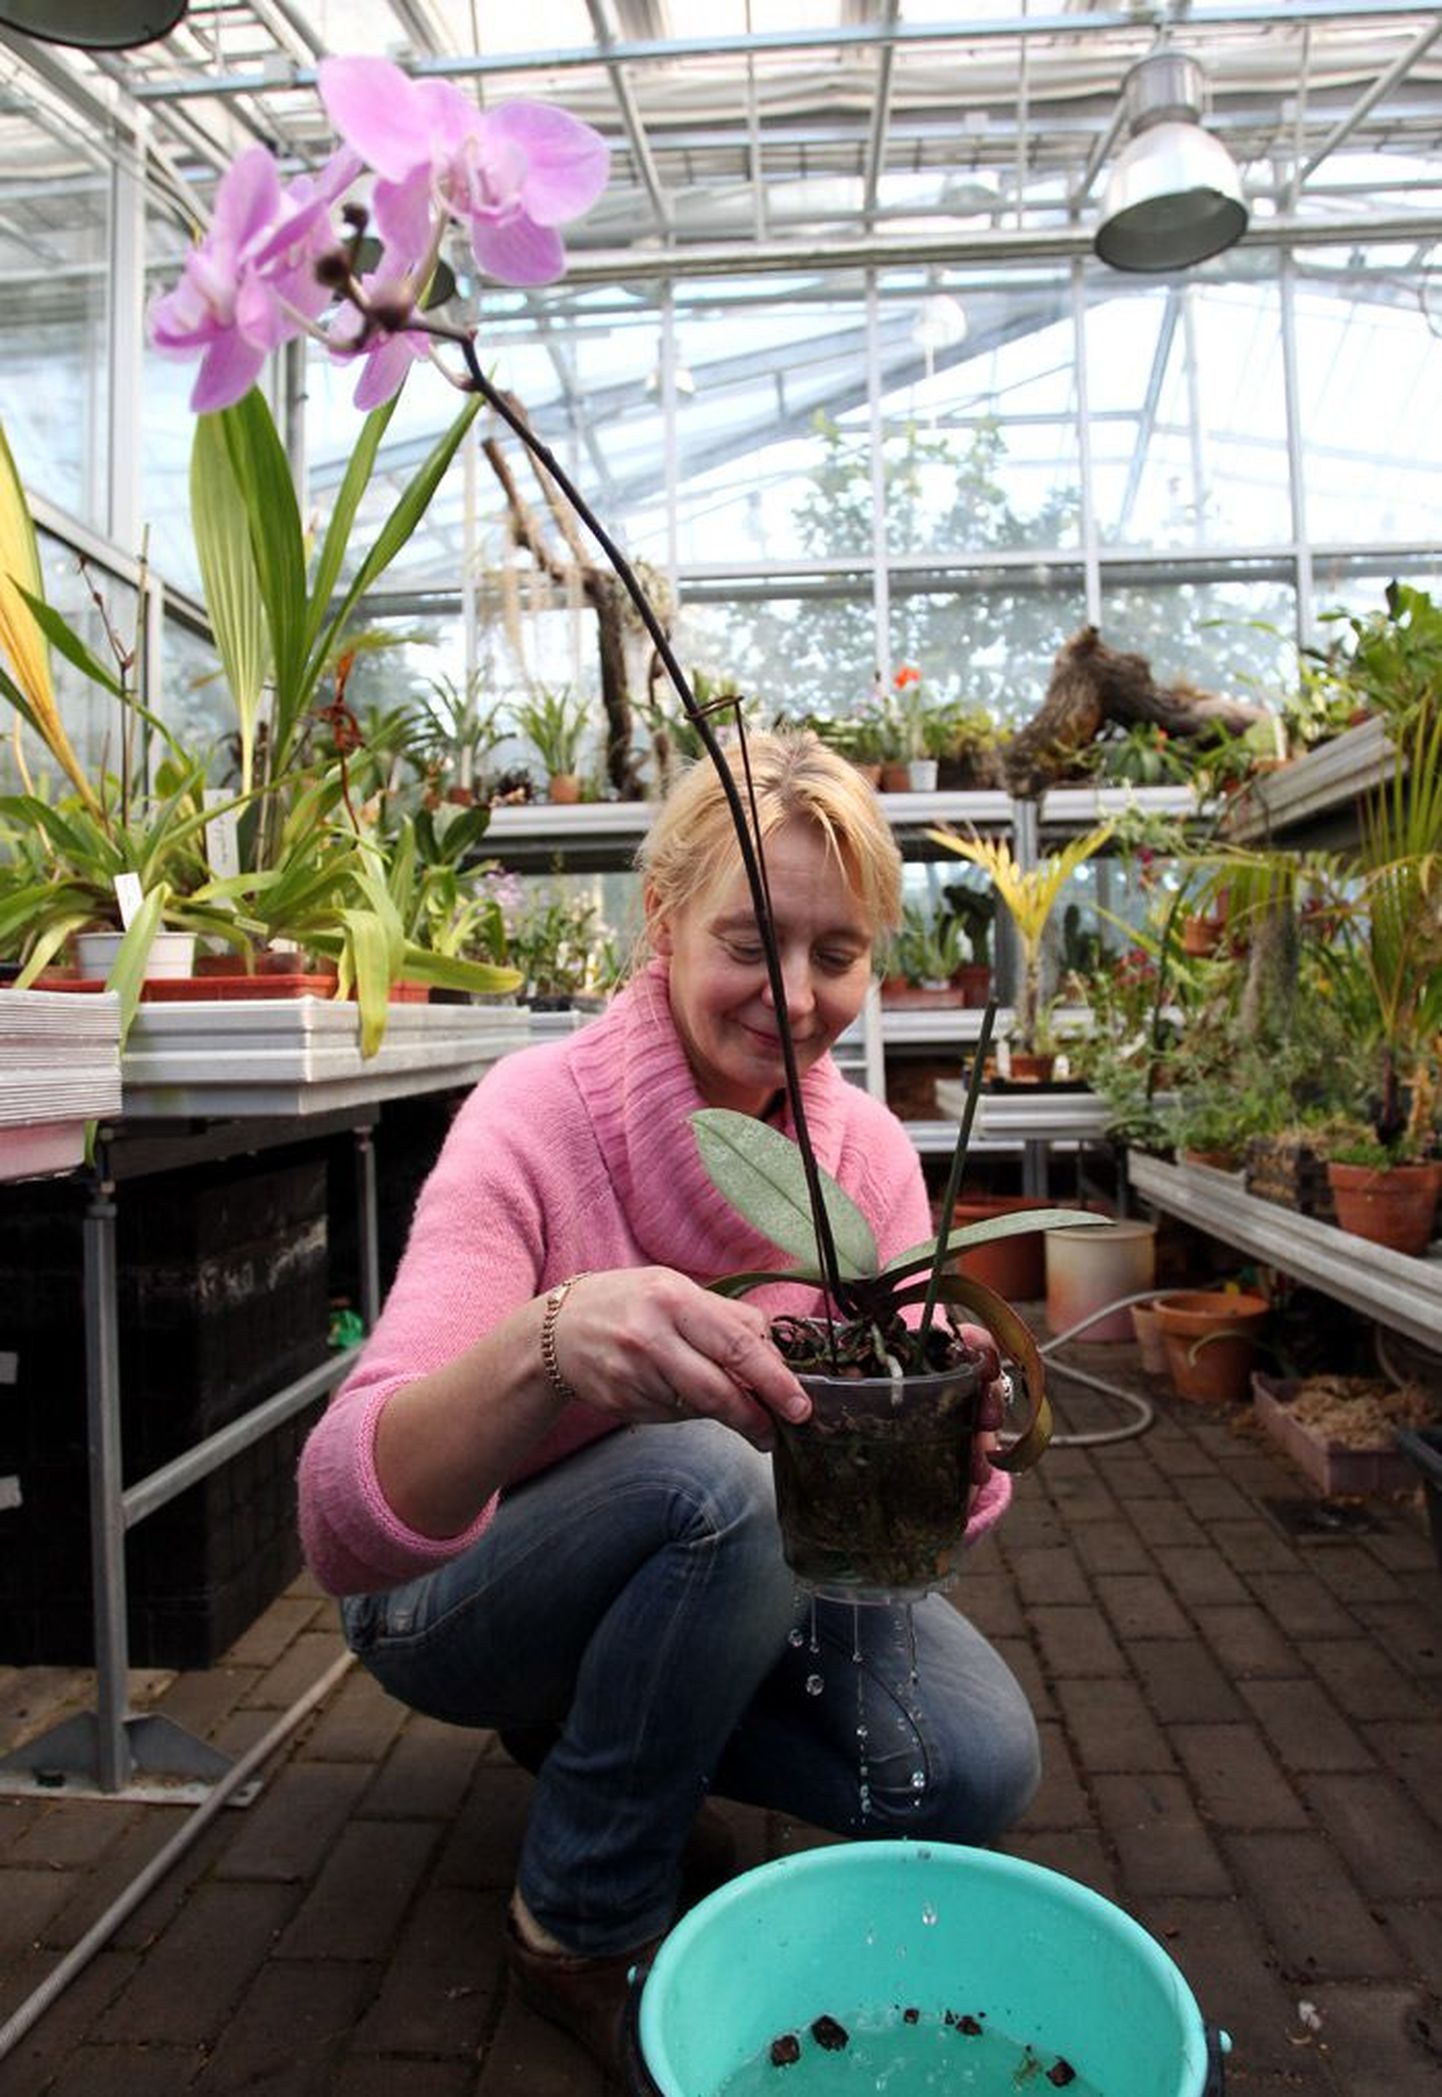 Tallinna botaanikaaia aednik Ingrid Mägar näitab, kuidas kasta kuukinga – taim tuleks koos potiga veidikeseks vette torgata.